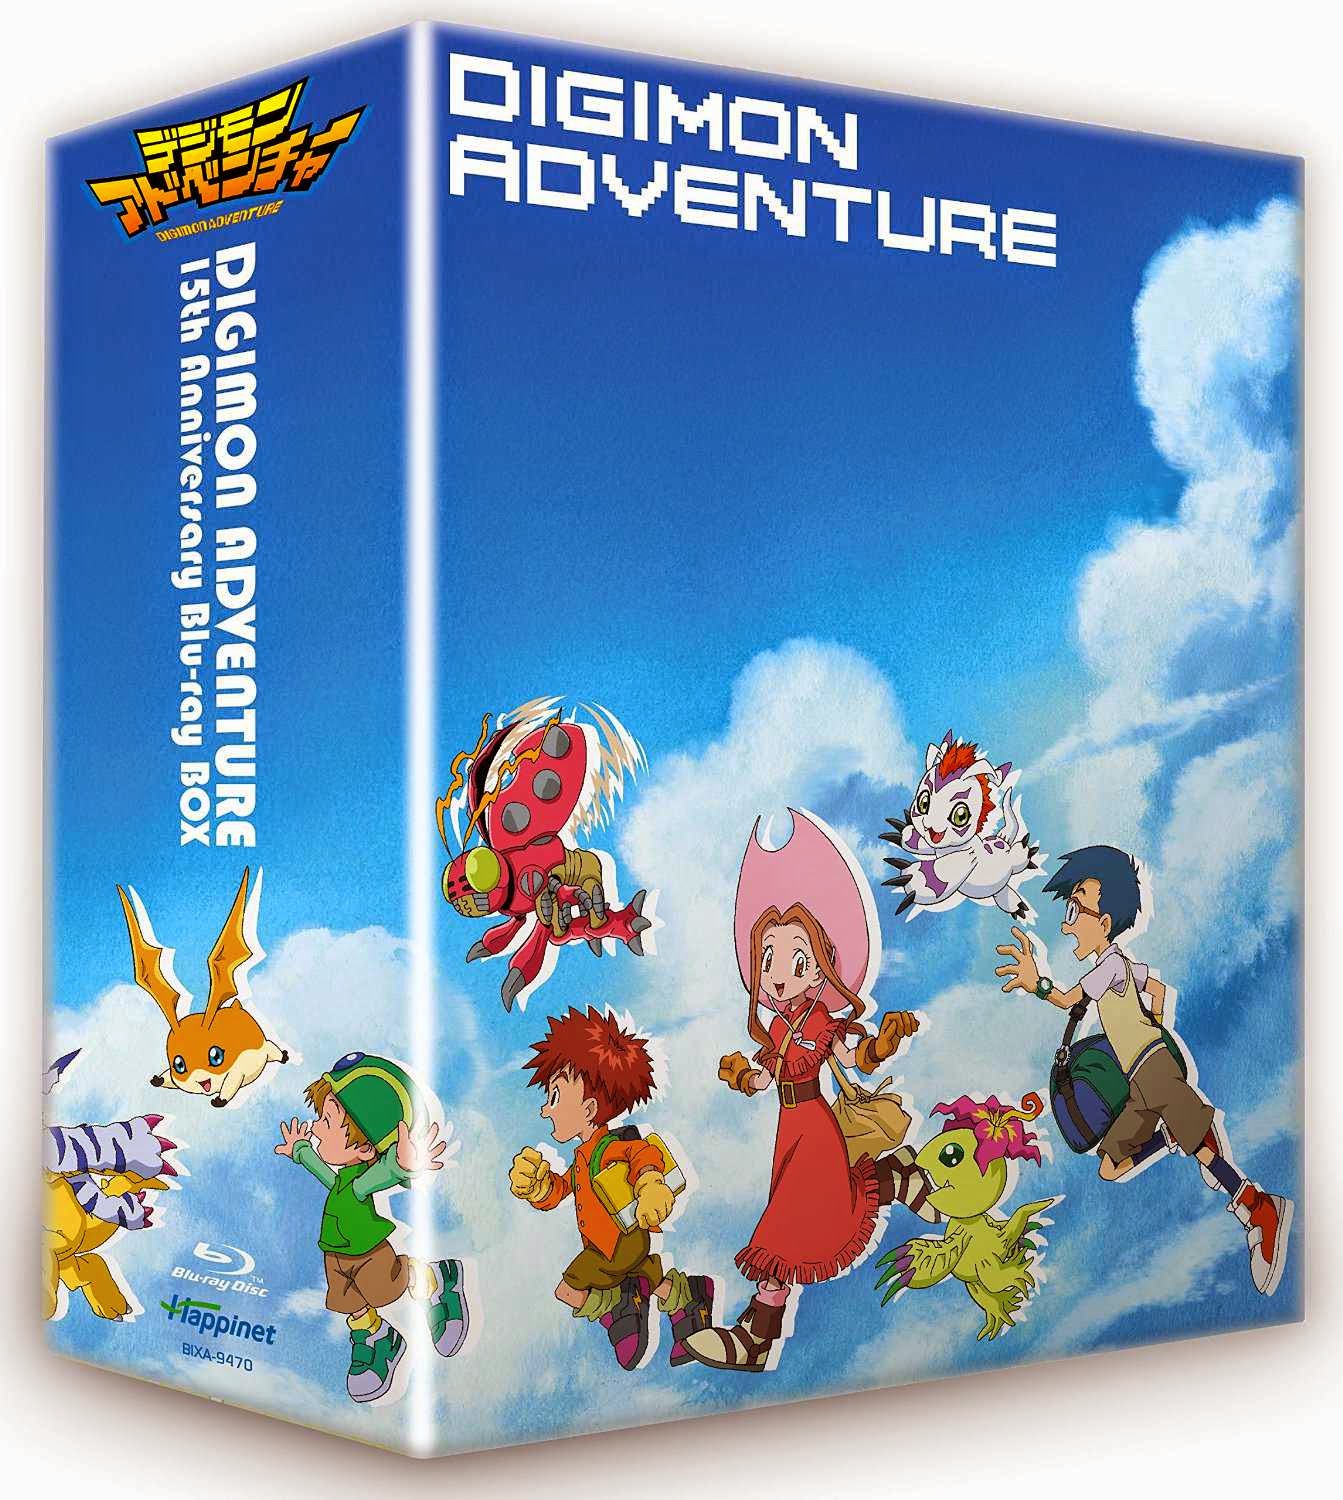 デジモンアドベンチャー 15th Anniversary Blu-ray BOX 「Encomenda」